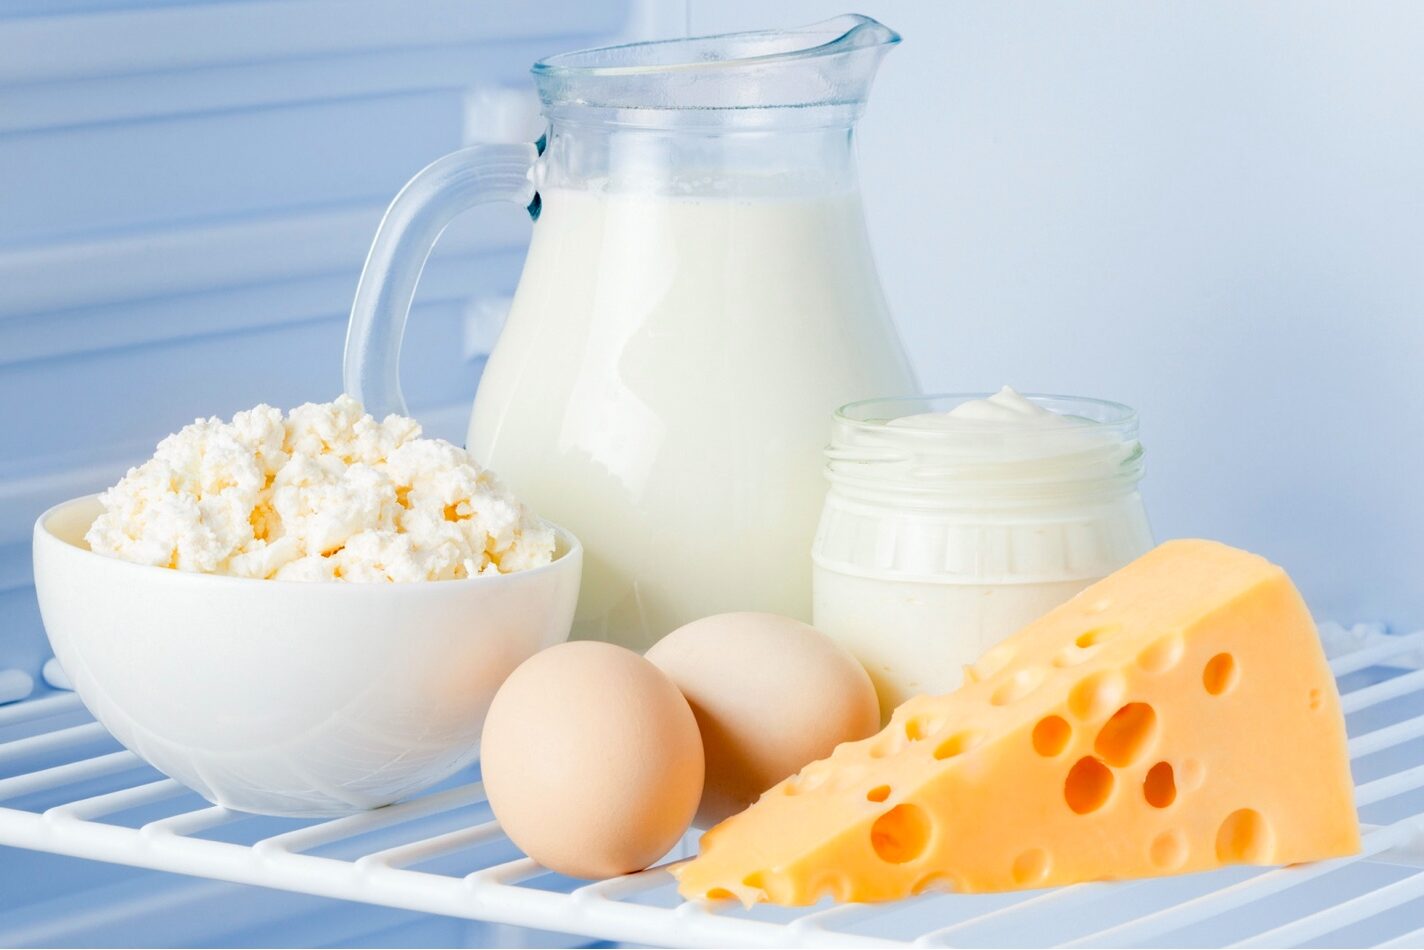 Mlieko, syry či vajcia už druhý mesiac za sebou lacnejú. Analytici načrtli ďalší cenový vývoj pri potravinách